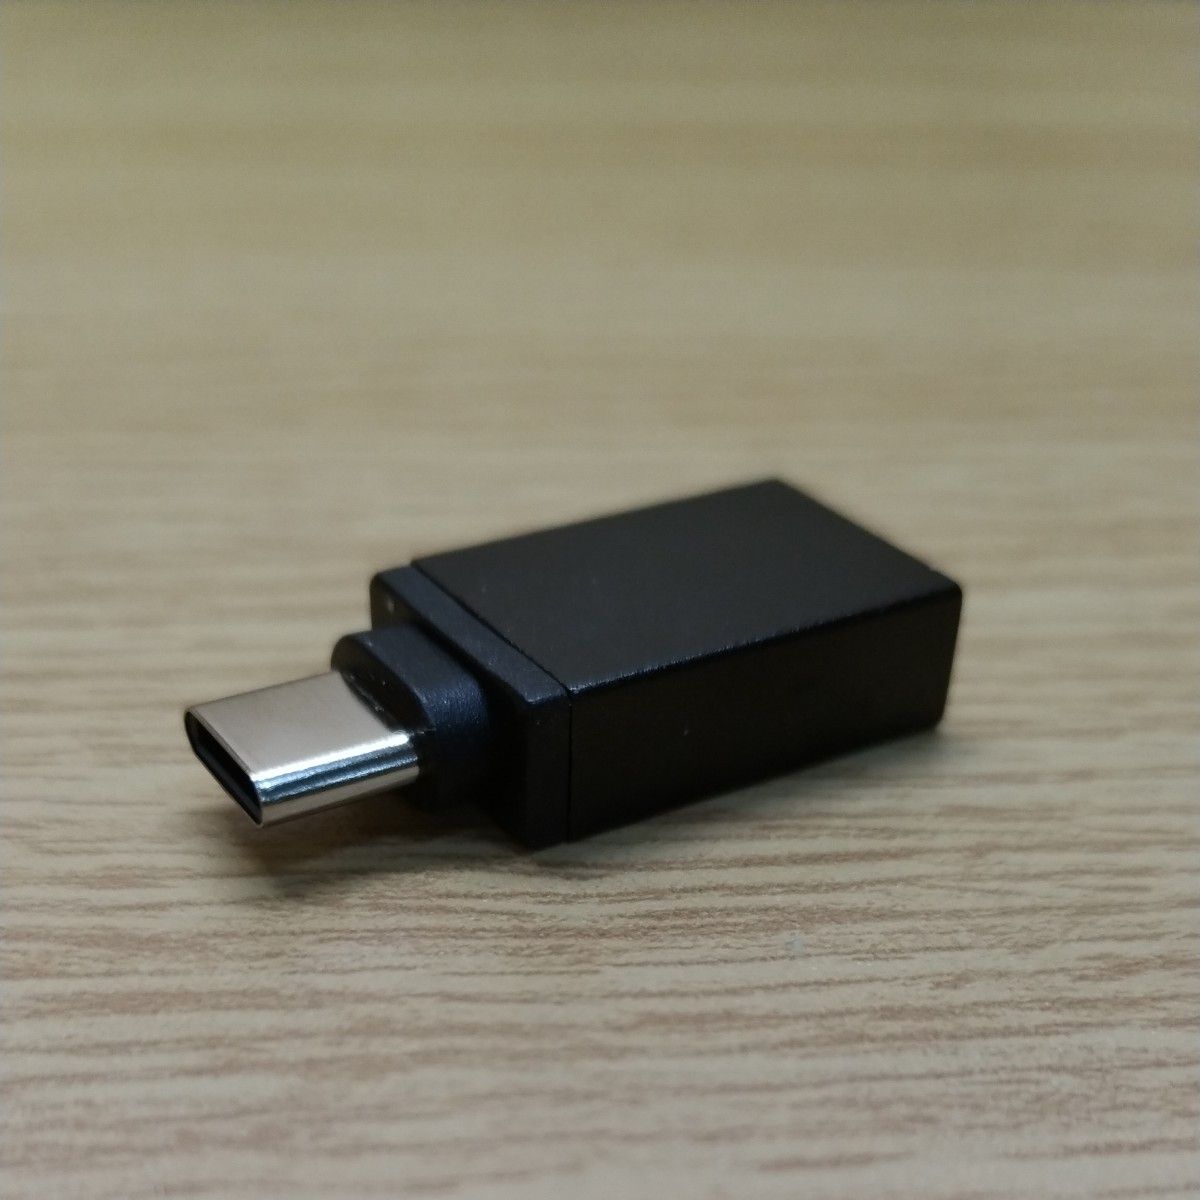 USB Type C (オス) to USB A  (メス) 変換アダプタ